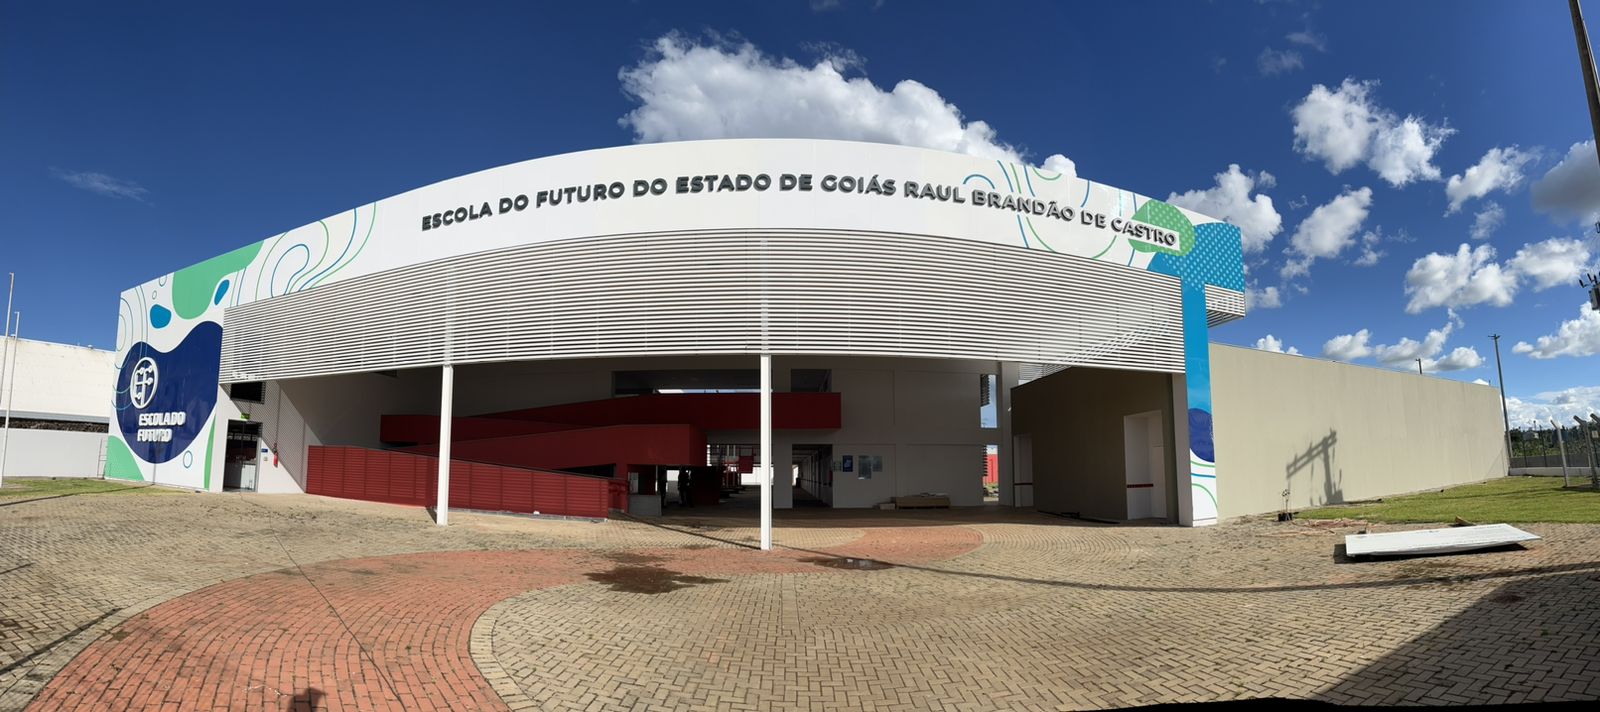 Governo de Goiás inaugura Escola do Futuro, em Mineiros